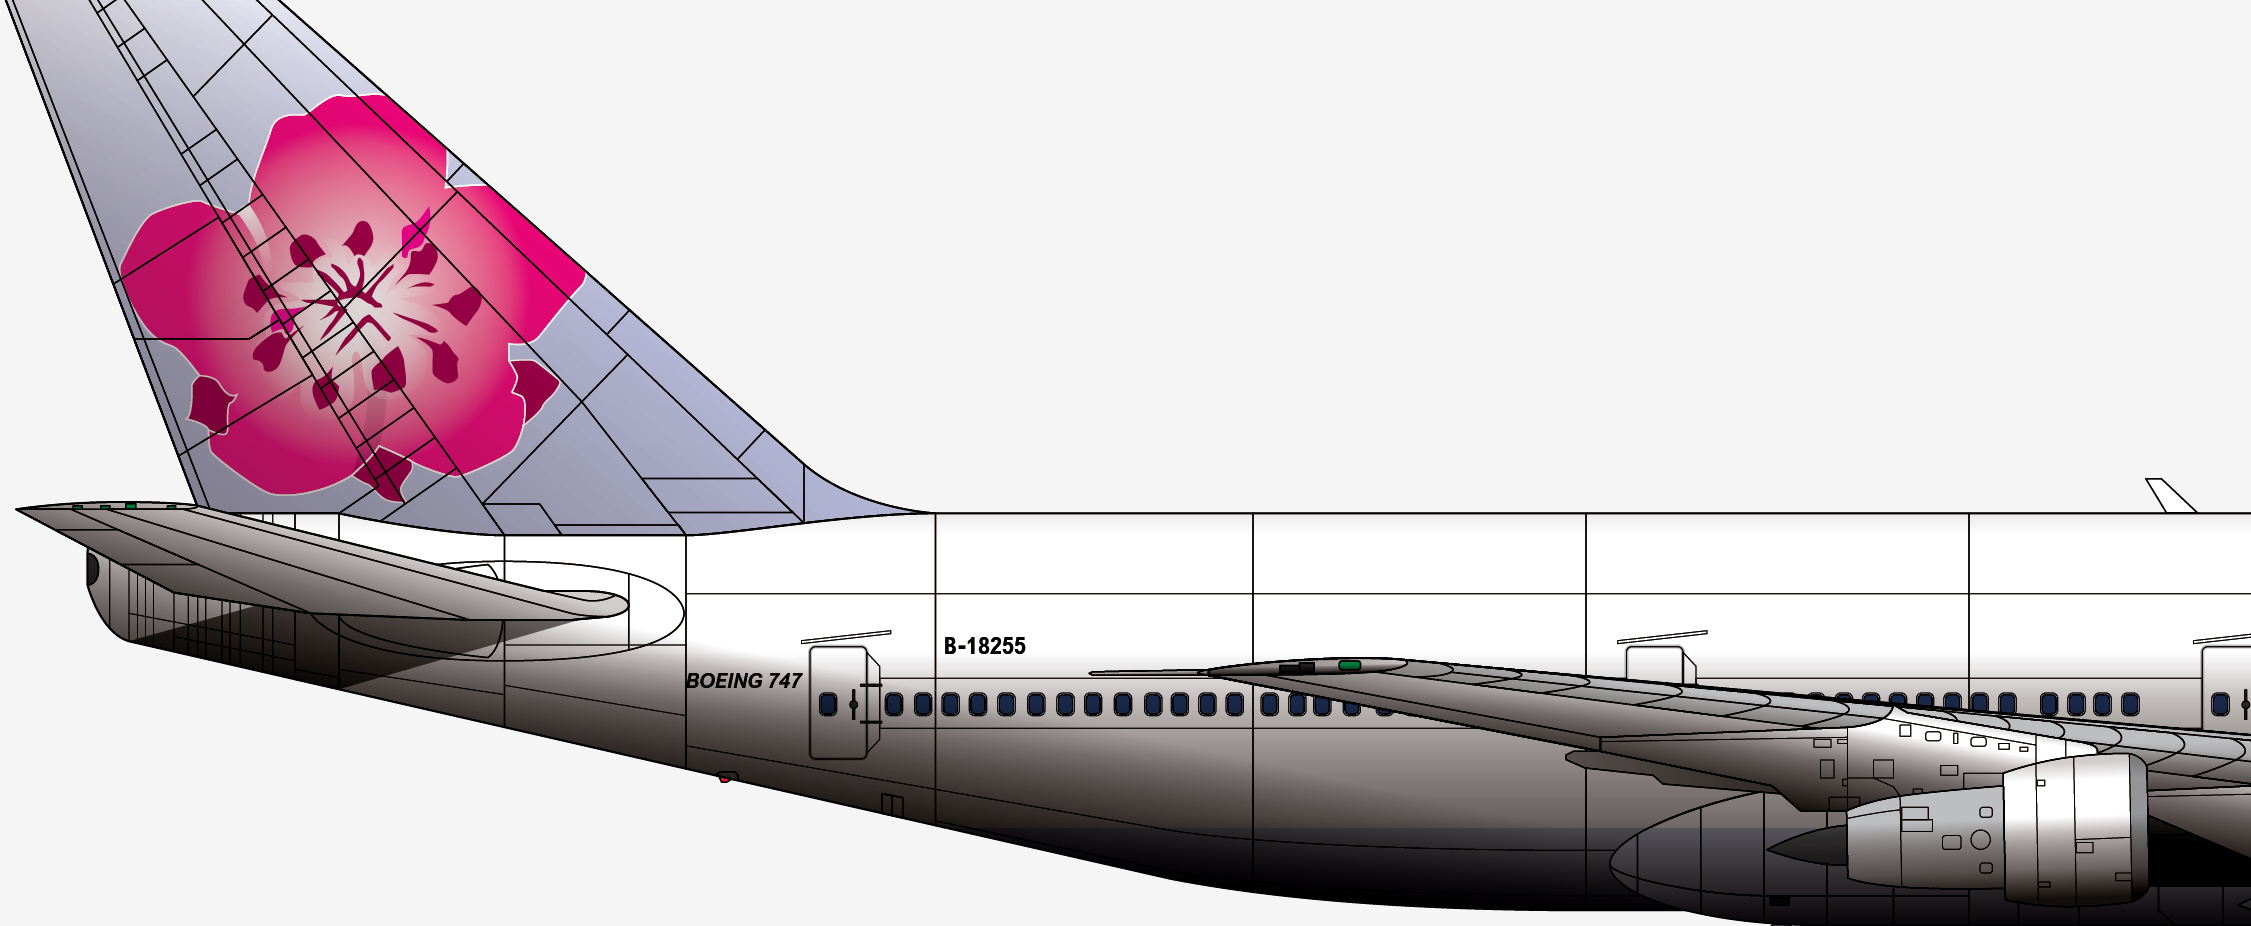 22年前的一次不规范的维修竟至华航CI120航班携225人澎湖空中解体